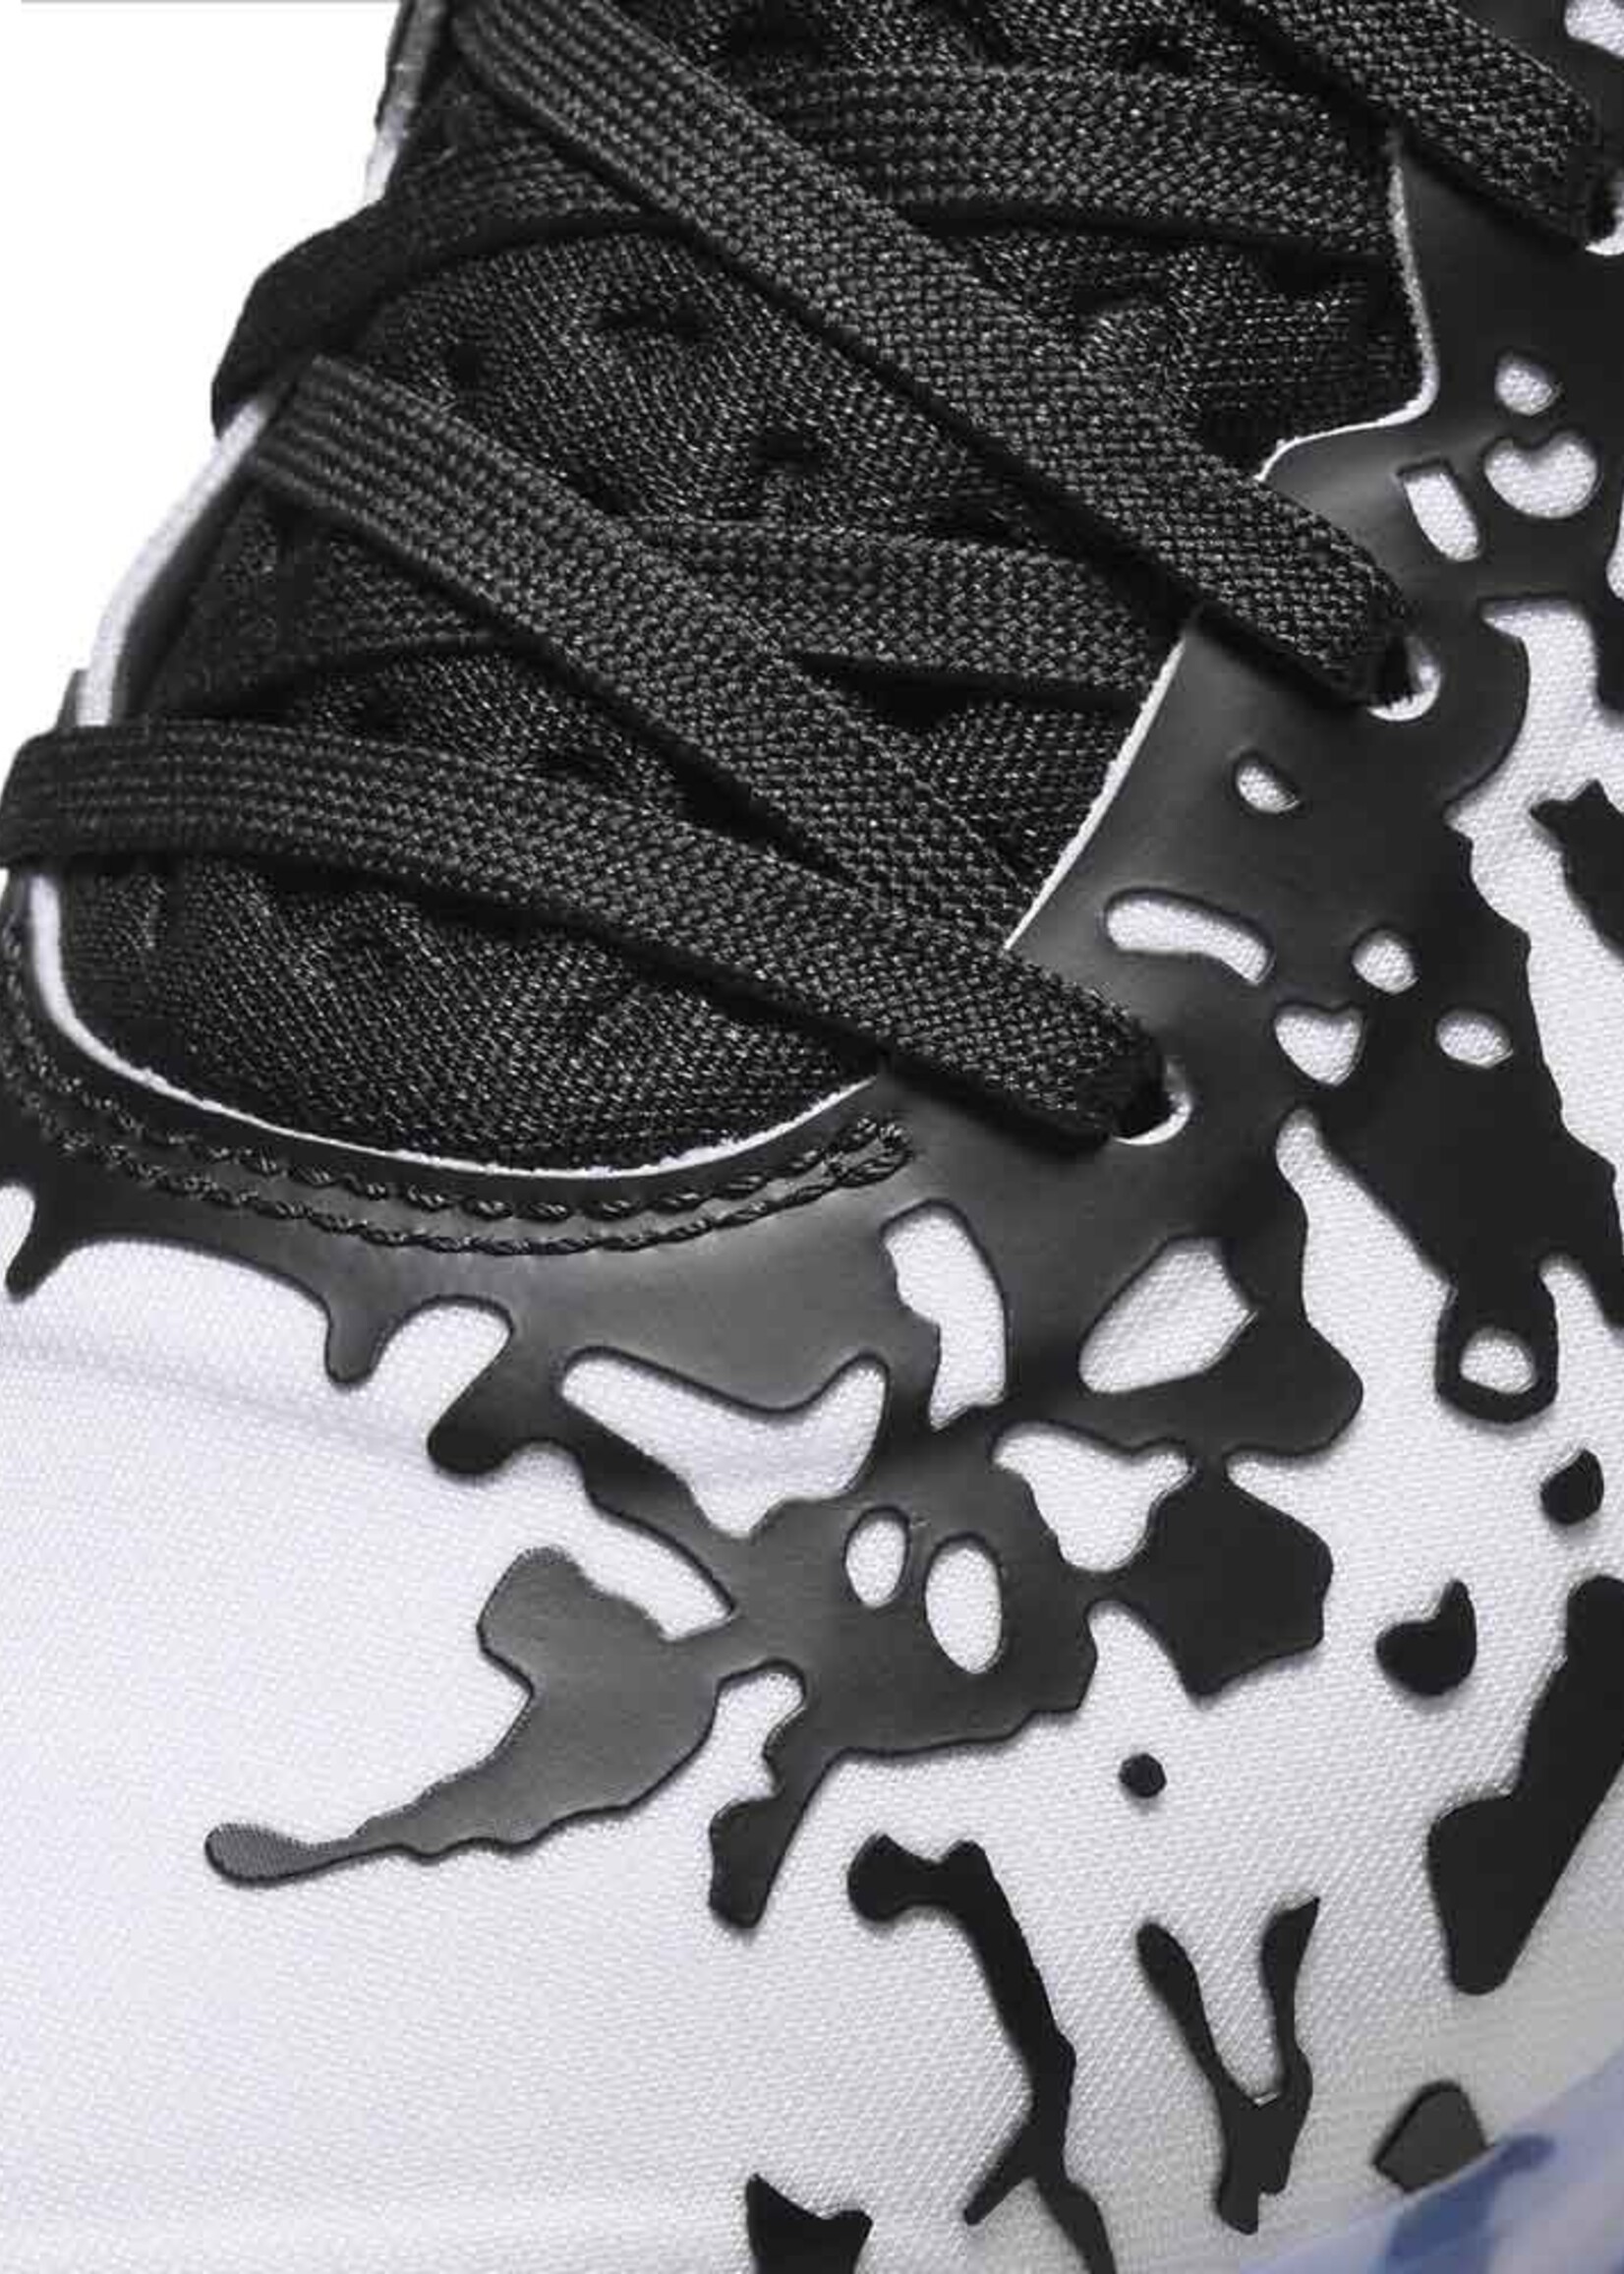 Nike Jordan Zion 3 'Gen Zion' Zwart Wit